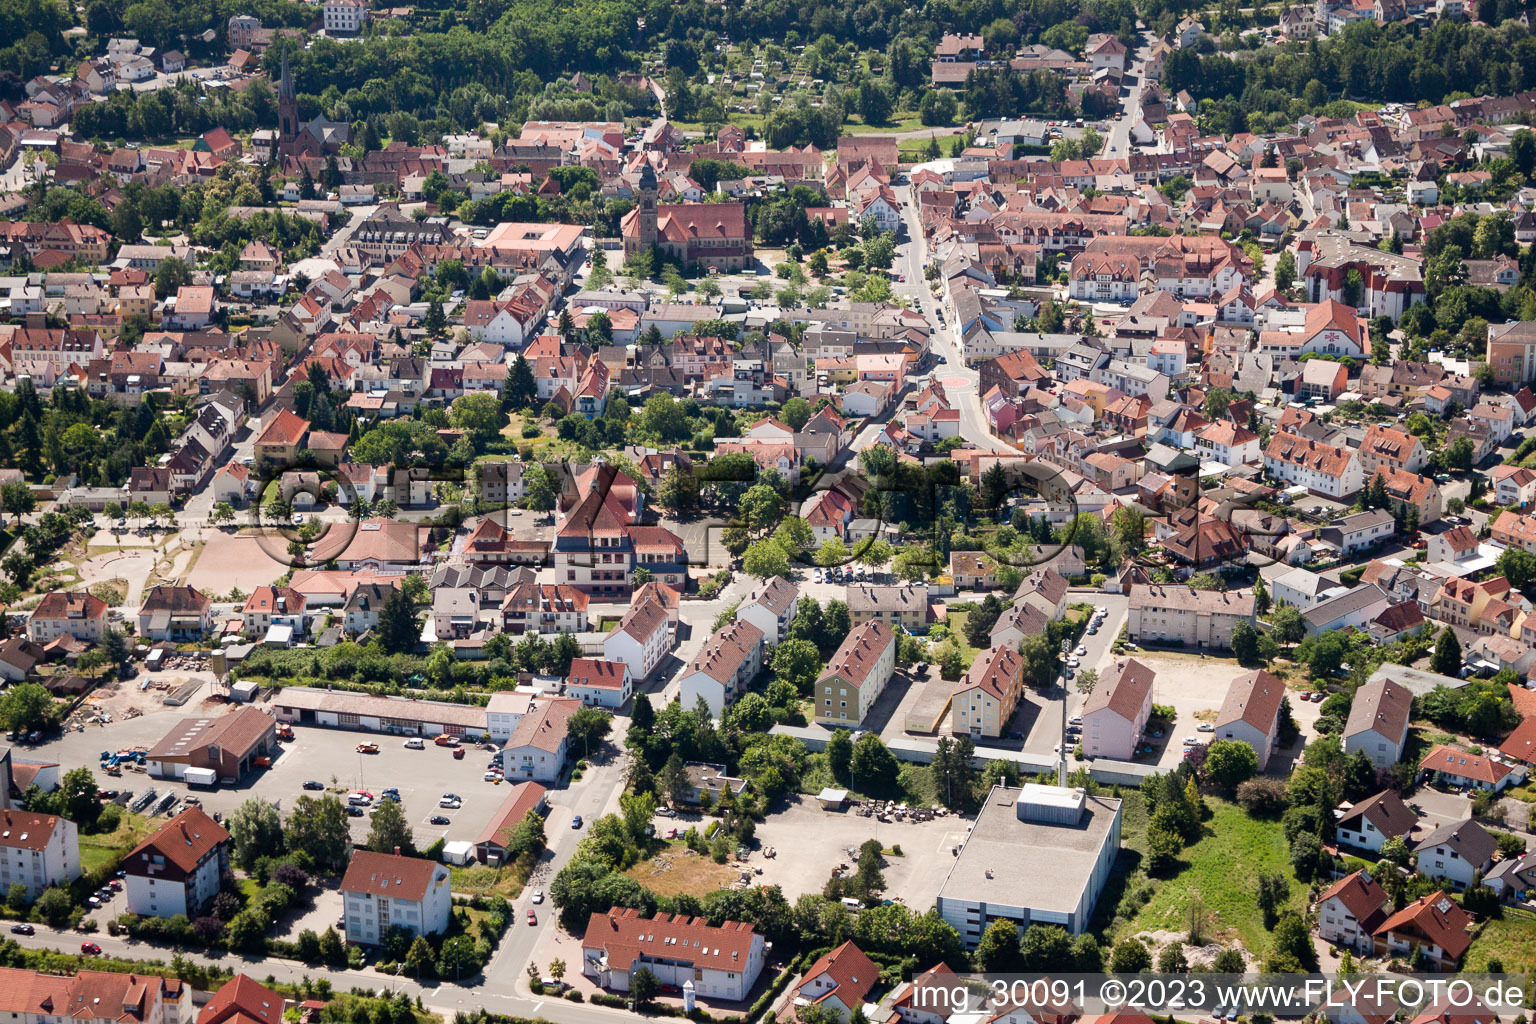 Eisenberg im Bundesland Rheinland-Pfalz, Deutschland von der Drohne aus gesehen